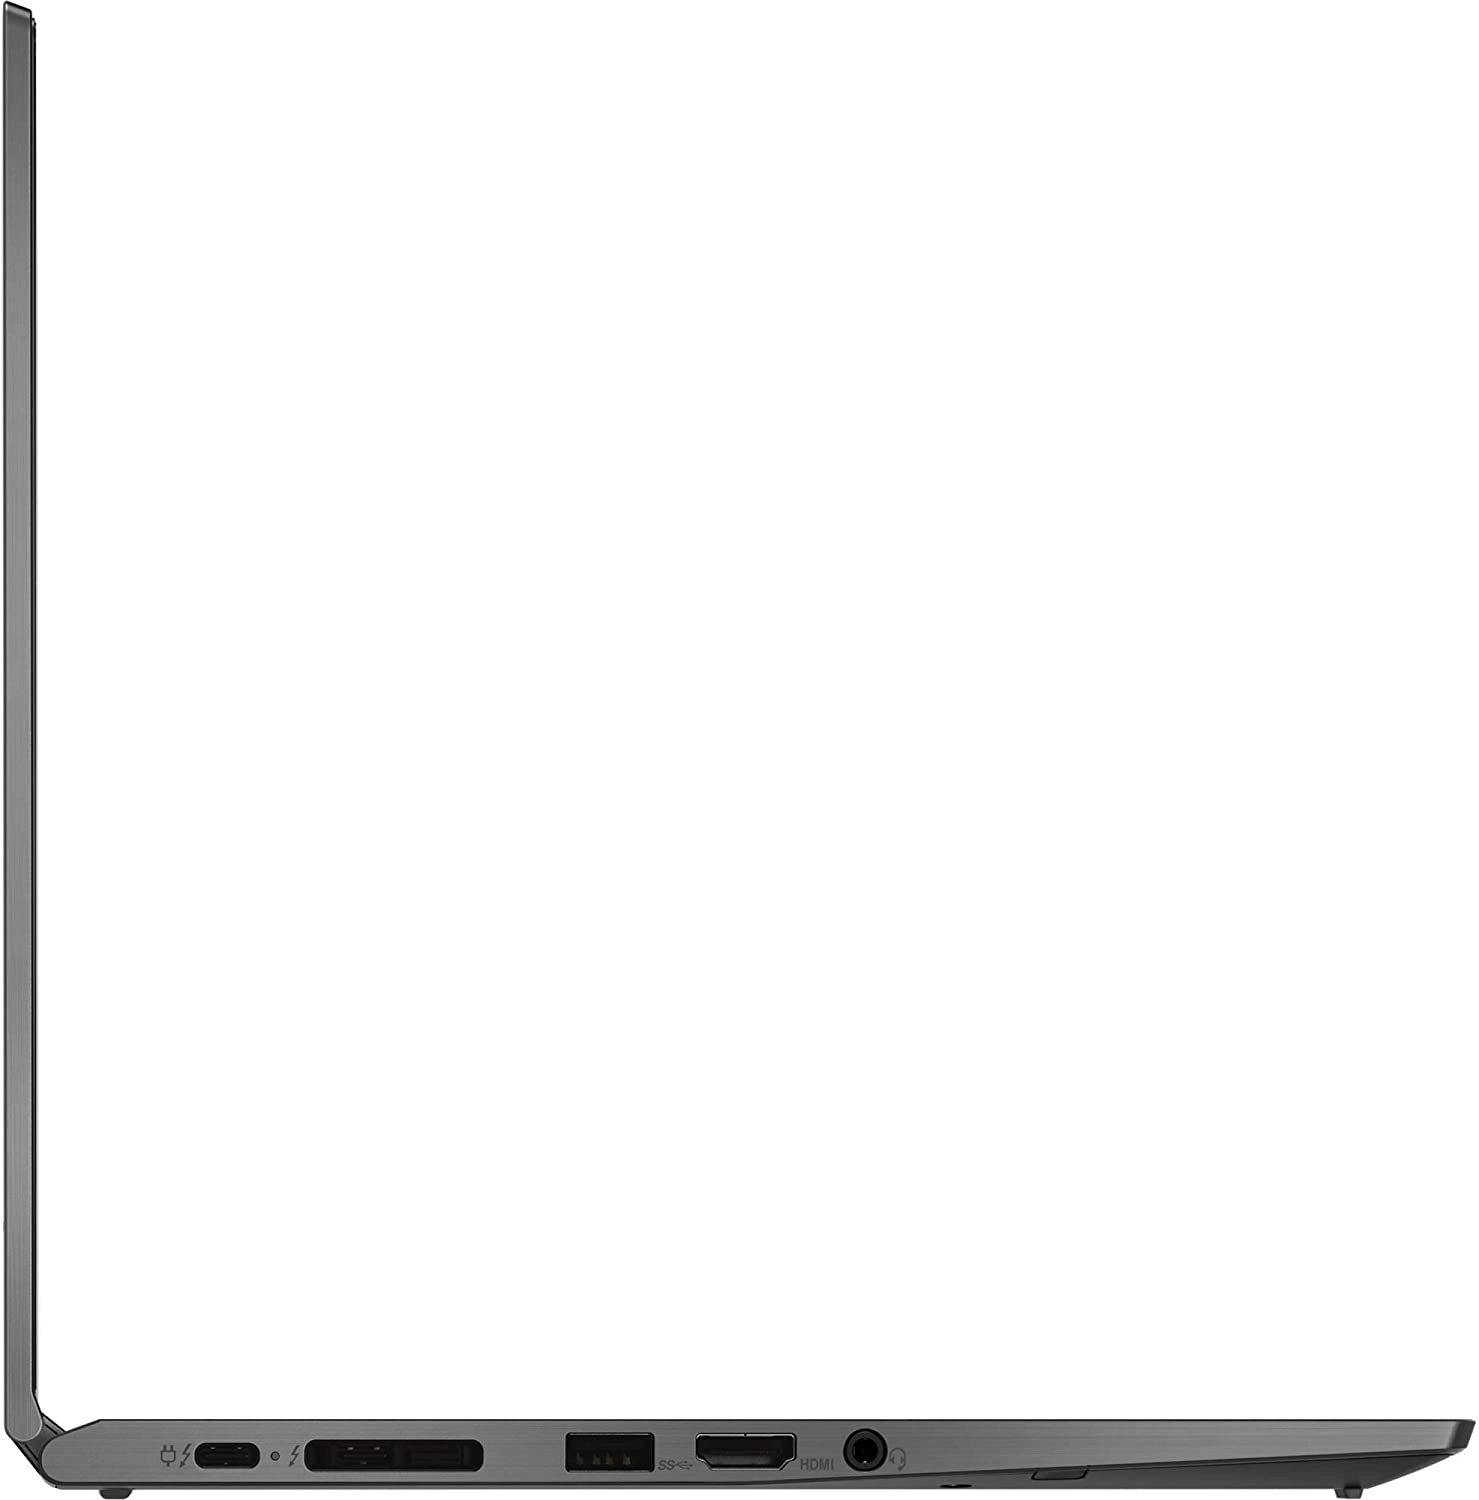 Lenovo Thinkpad Yoga laptop image